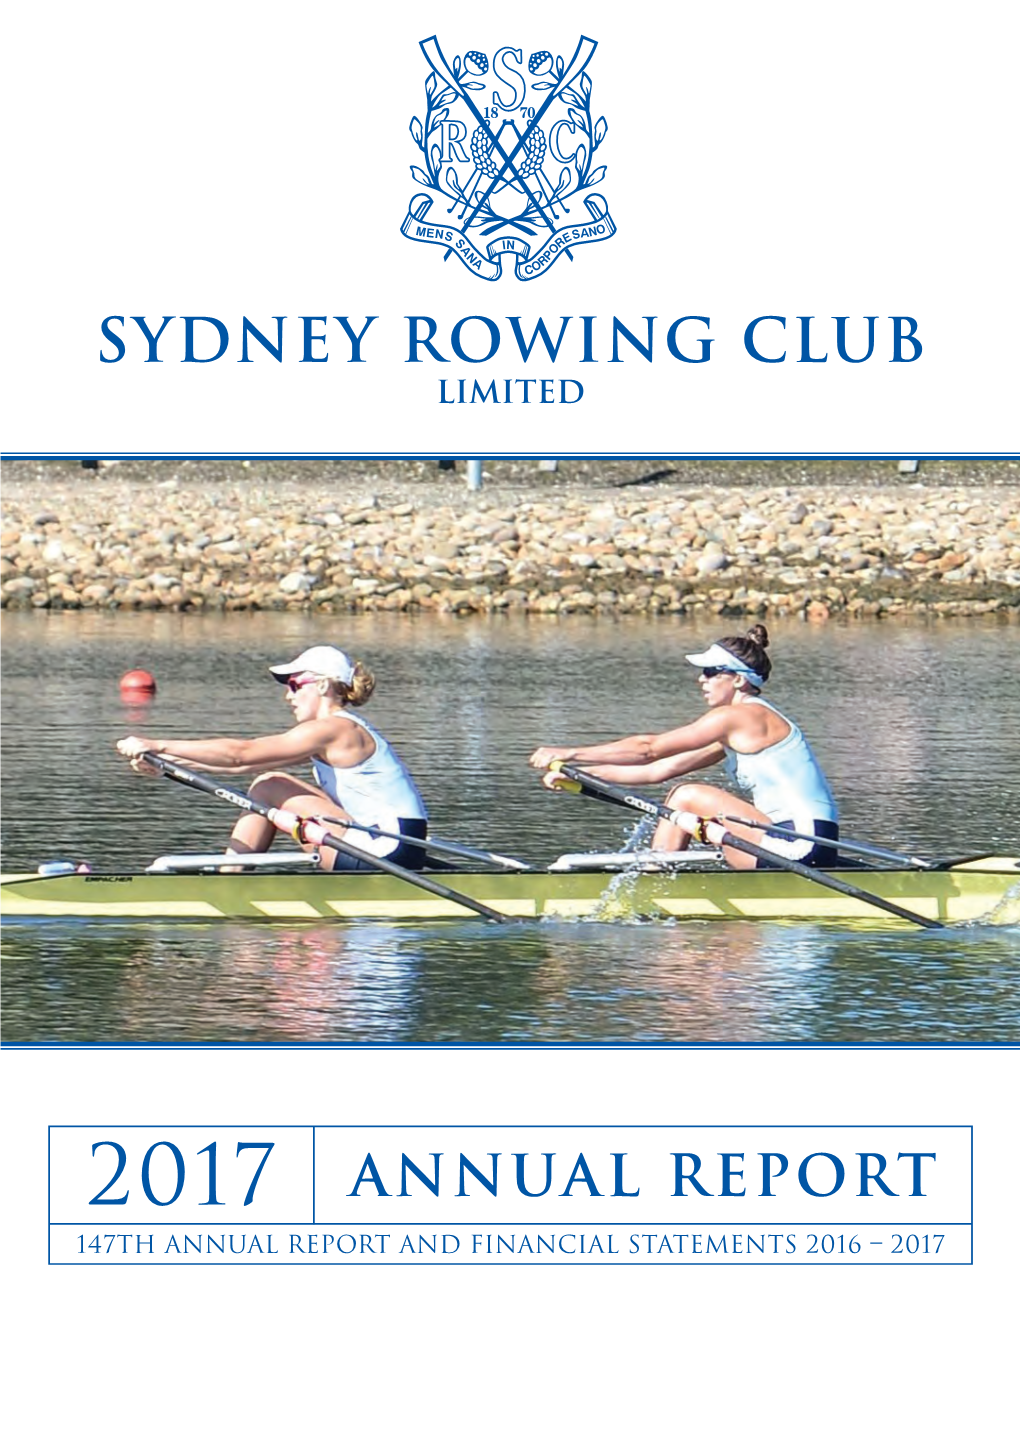 Sydney Rowing Club Limited